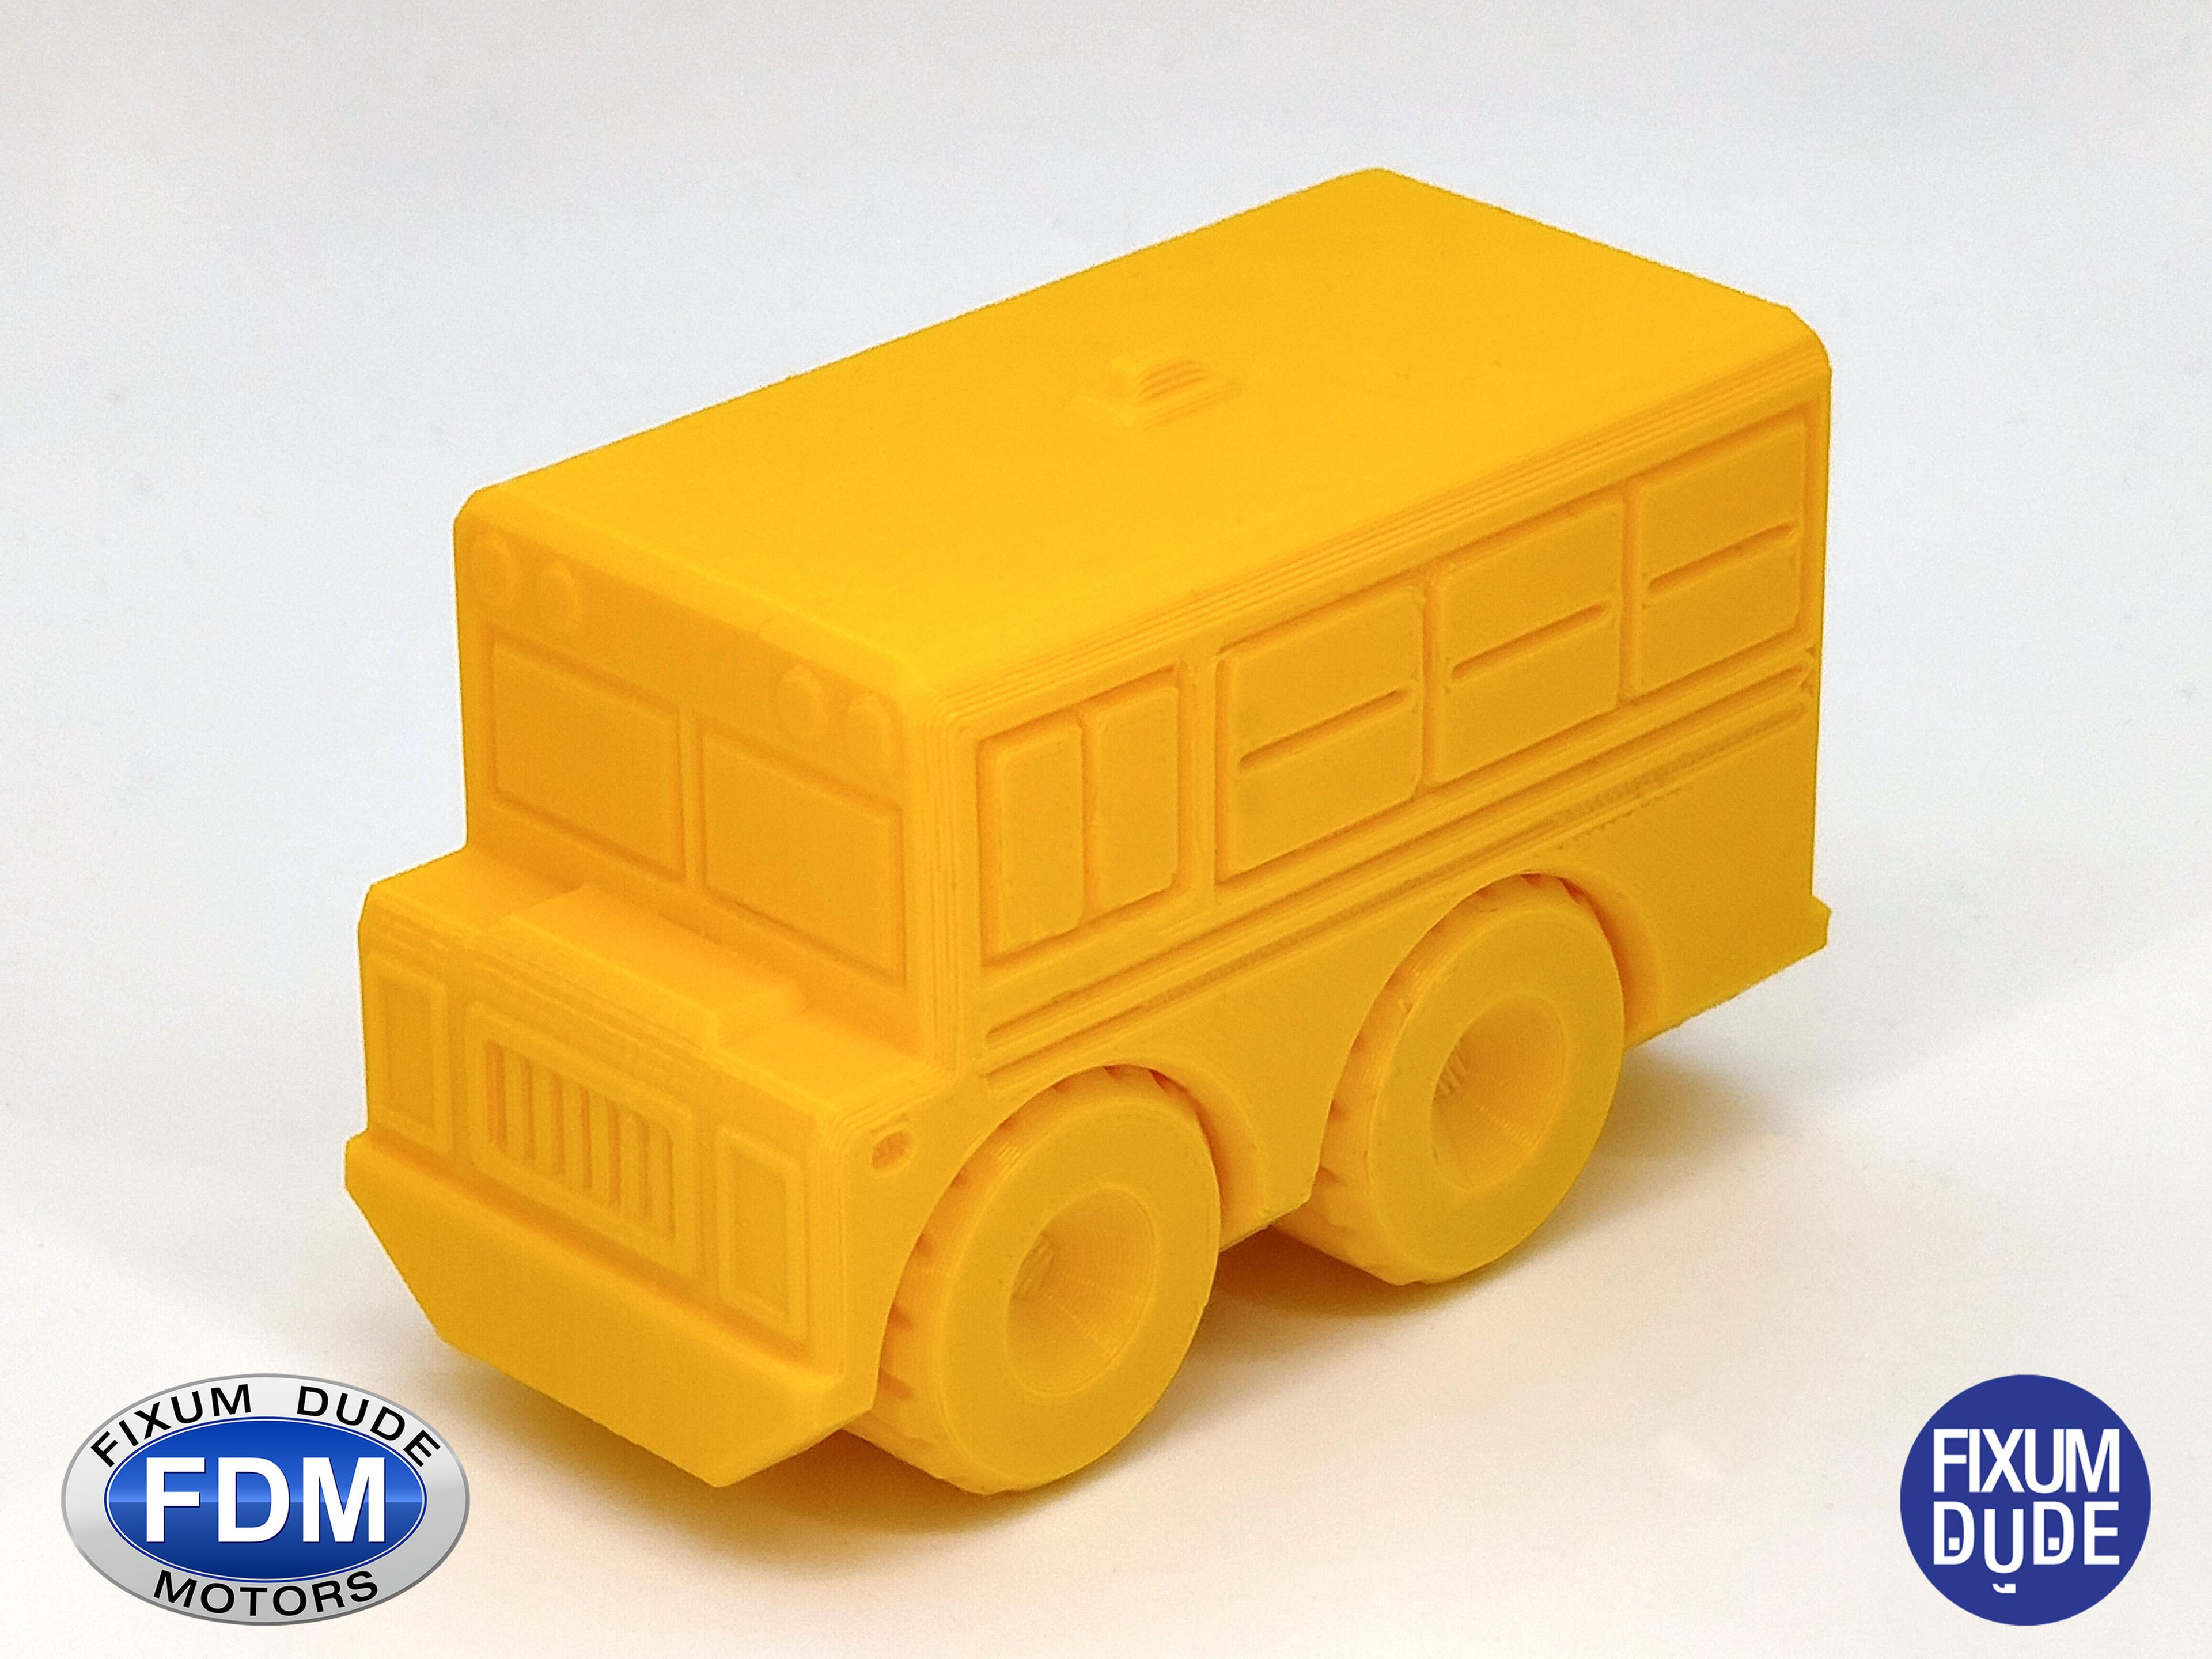 Fixum Dude Motors PIP School Bus 3d model